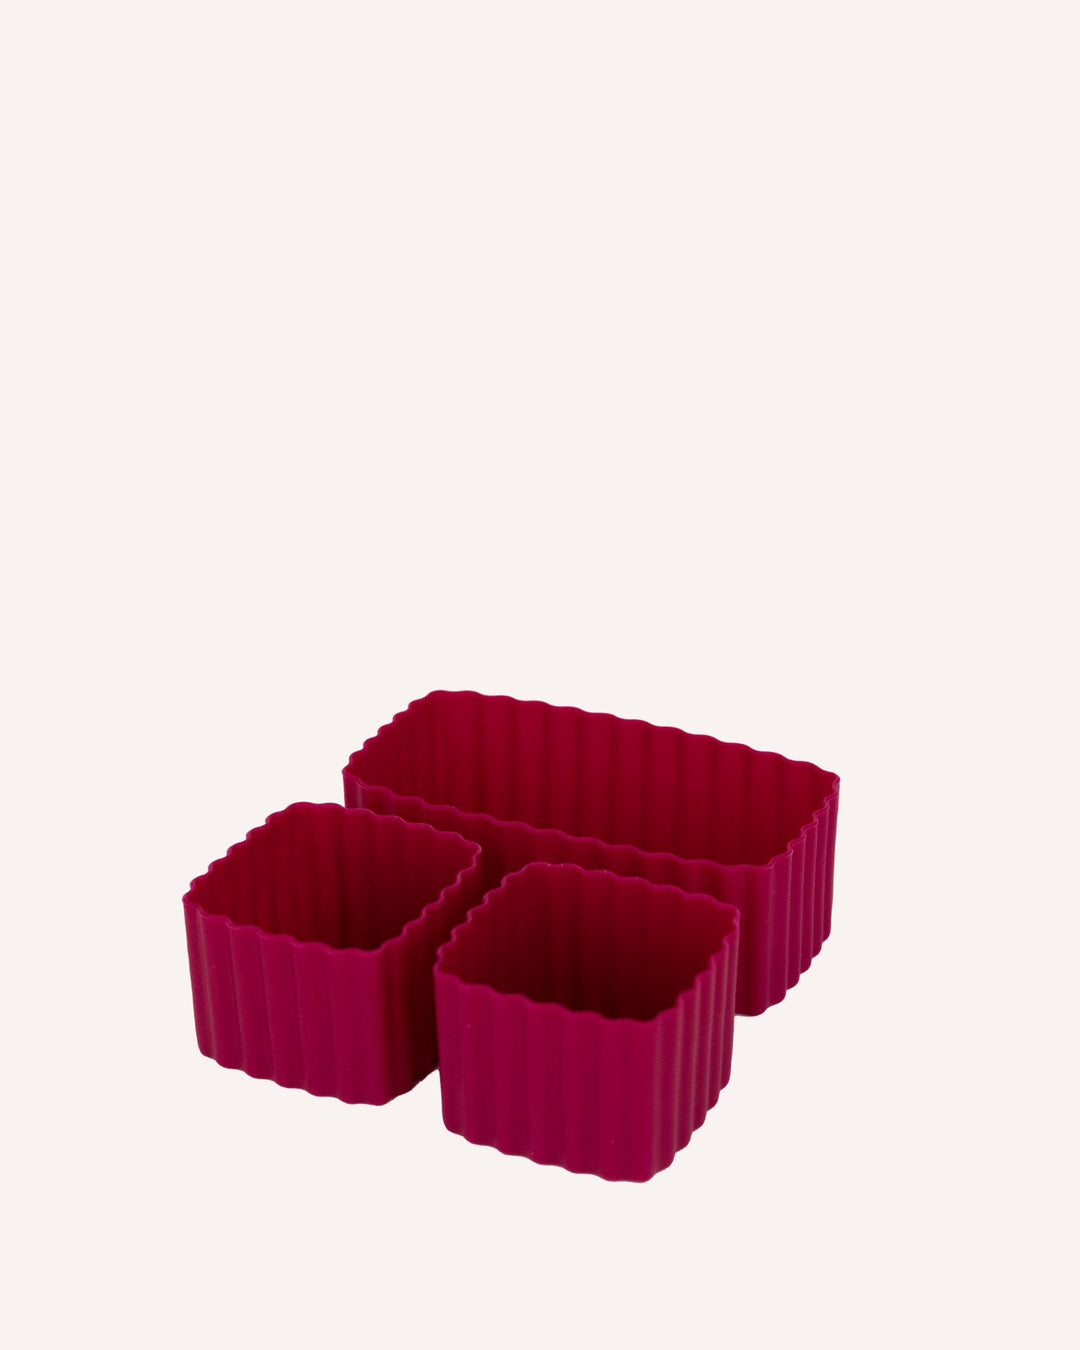 https://montii.co/cdn/shop/files/MontiiCo_Bento-Cup-Silicone-Crimson.jpg?v=1695261036&width=1080